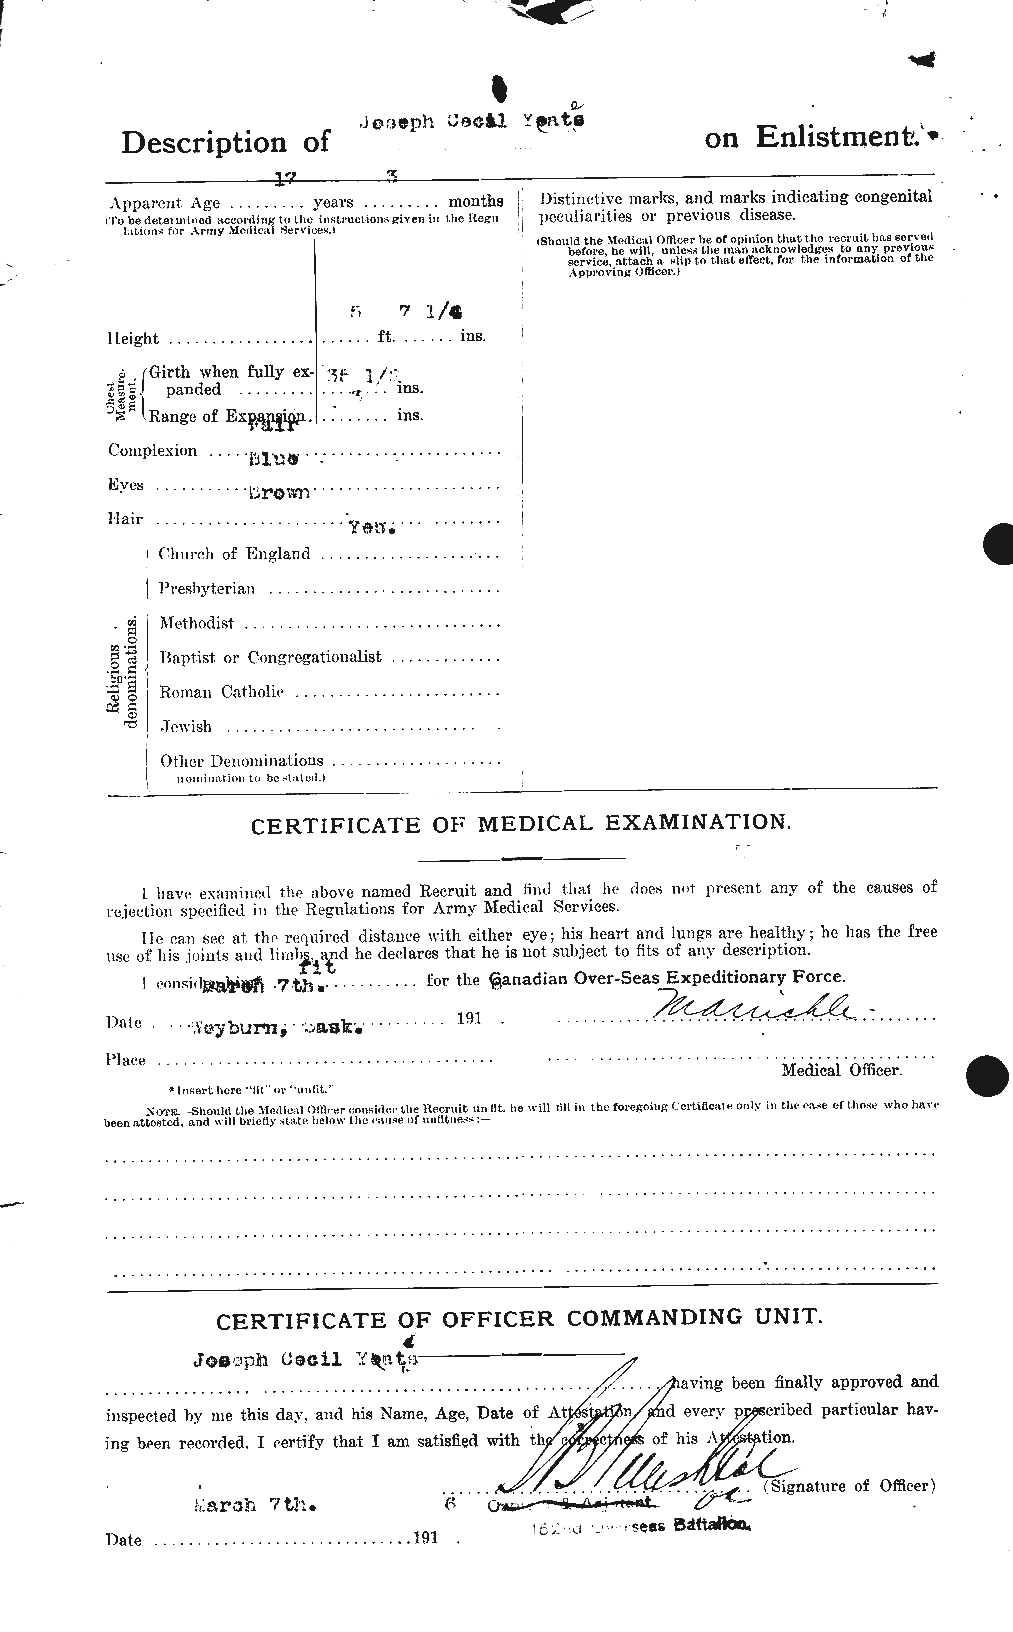 Dossiers du Personnel de la Première Guerre mondiale - CEC 691280b